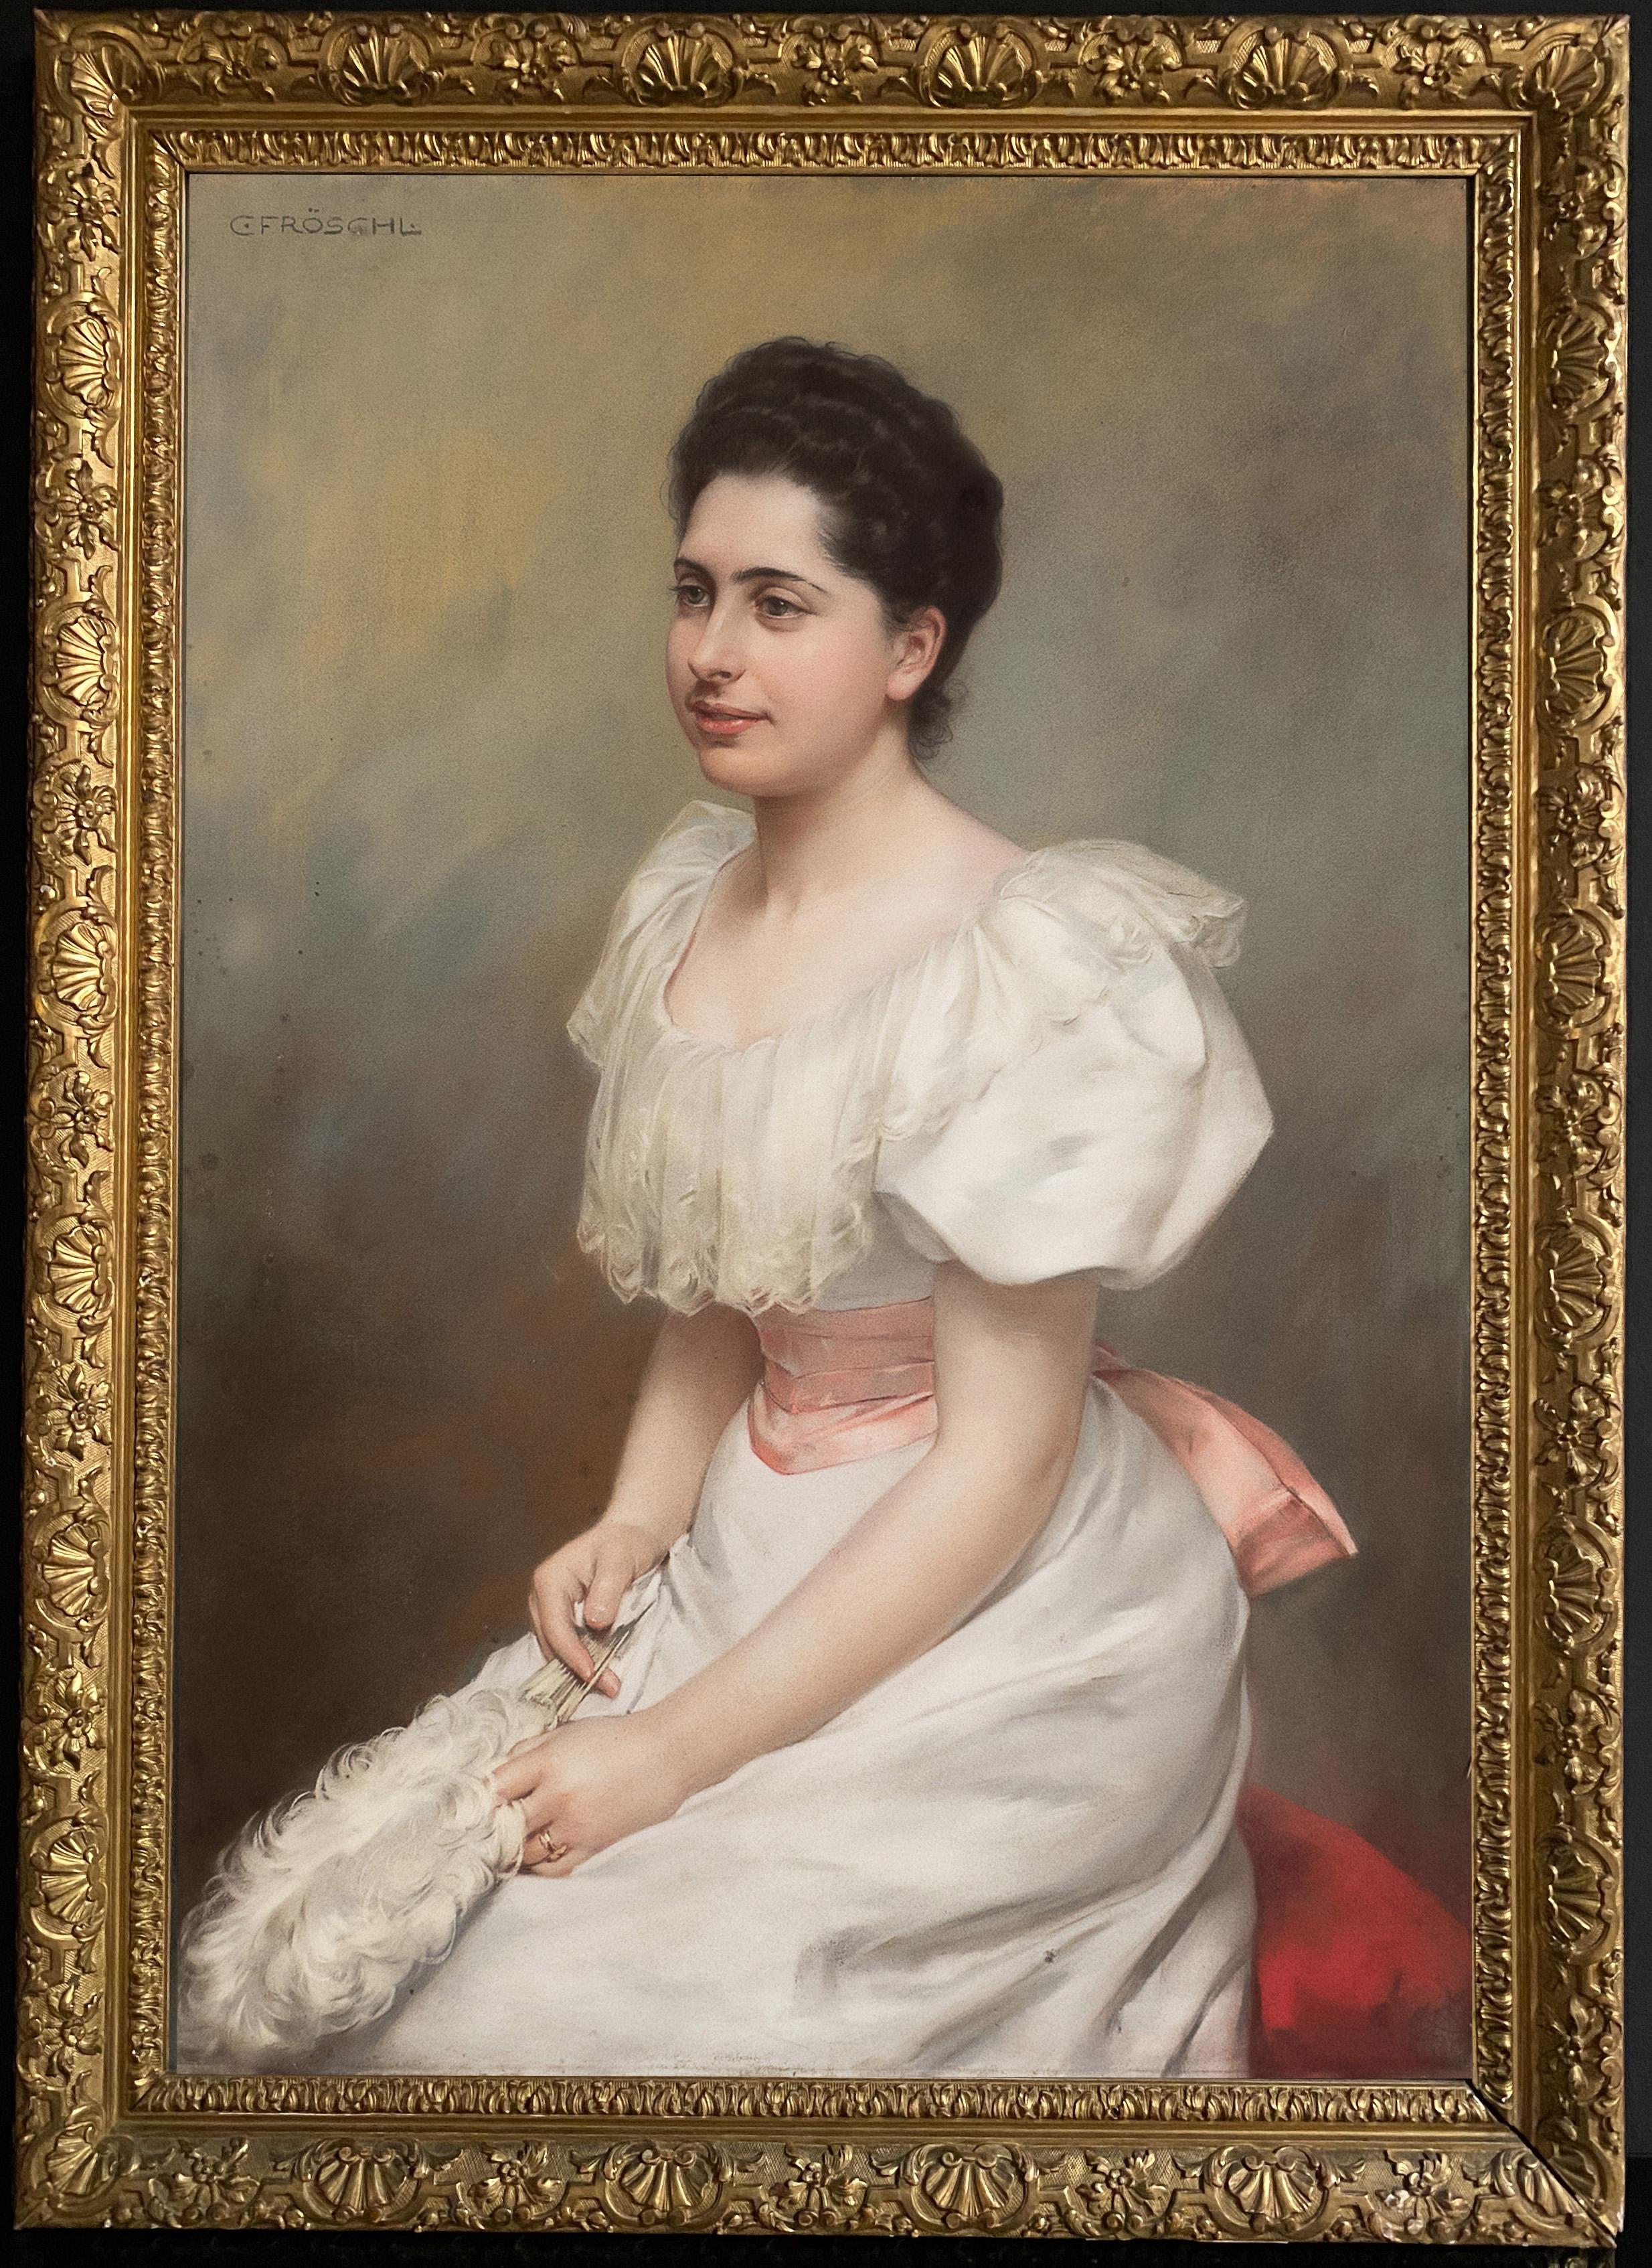 Anmutiges Porträt der Gräfin Carrobio Pastell auf Leinwand 1910 um 